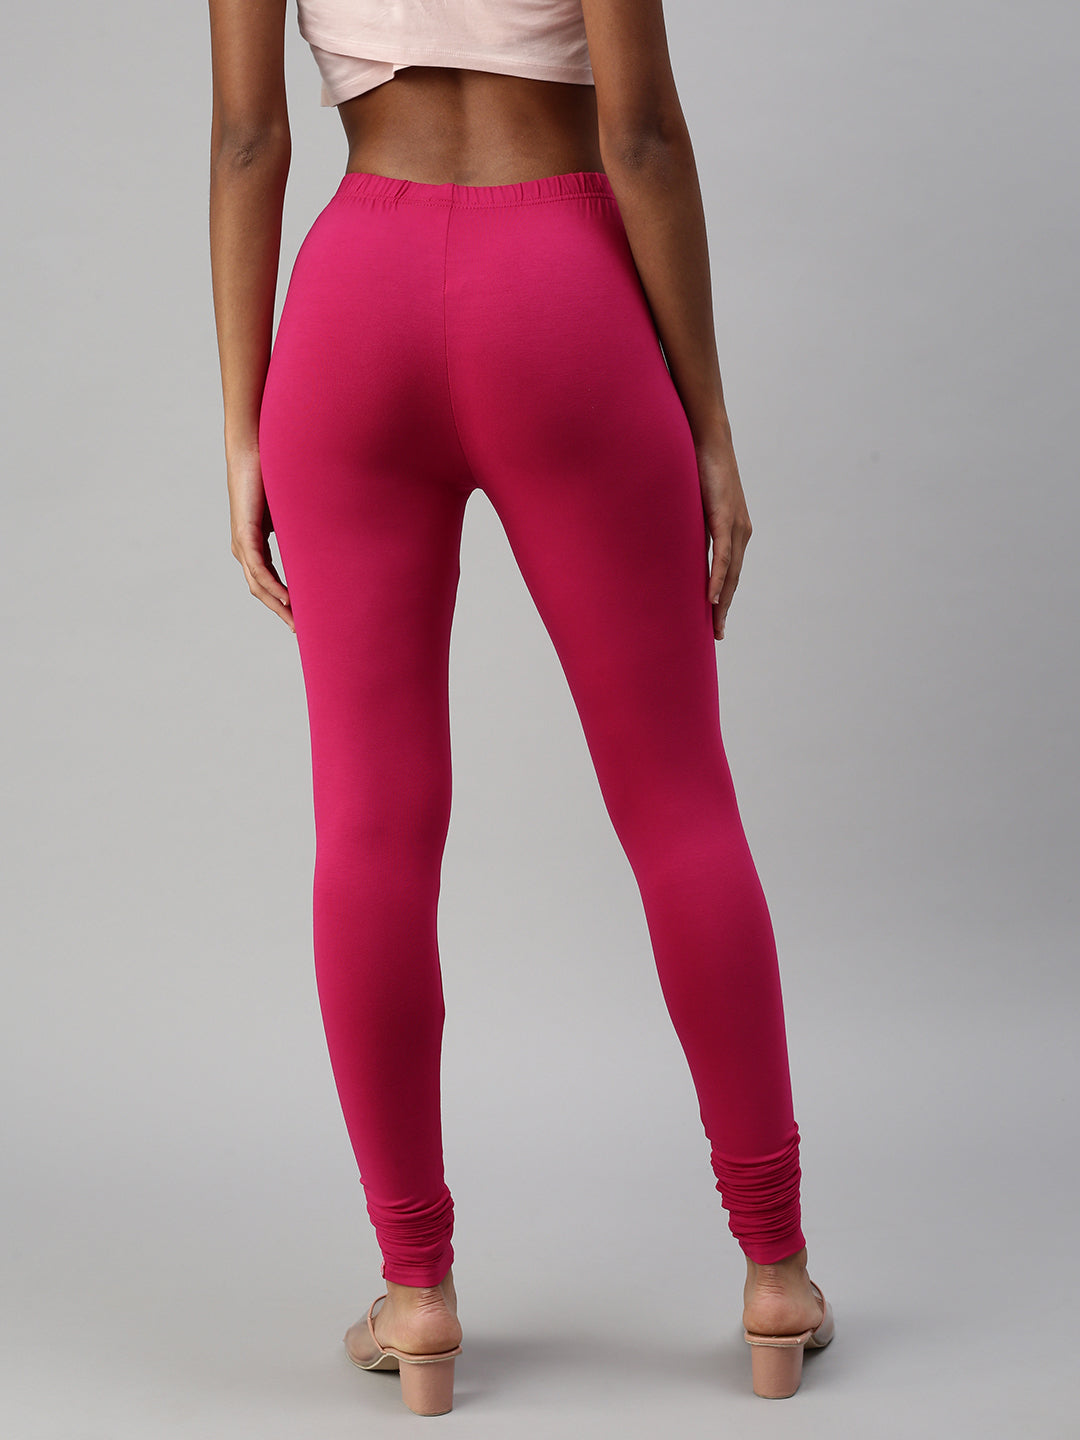 Lisa2 colourful high waisted legging - port melange / regular / xsmall